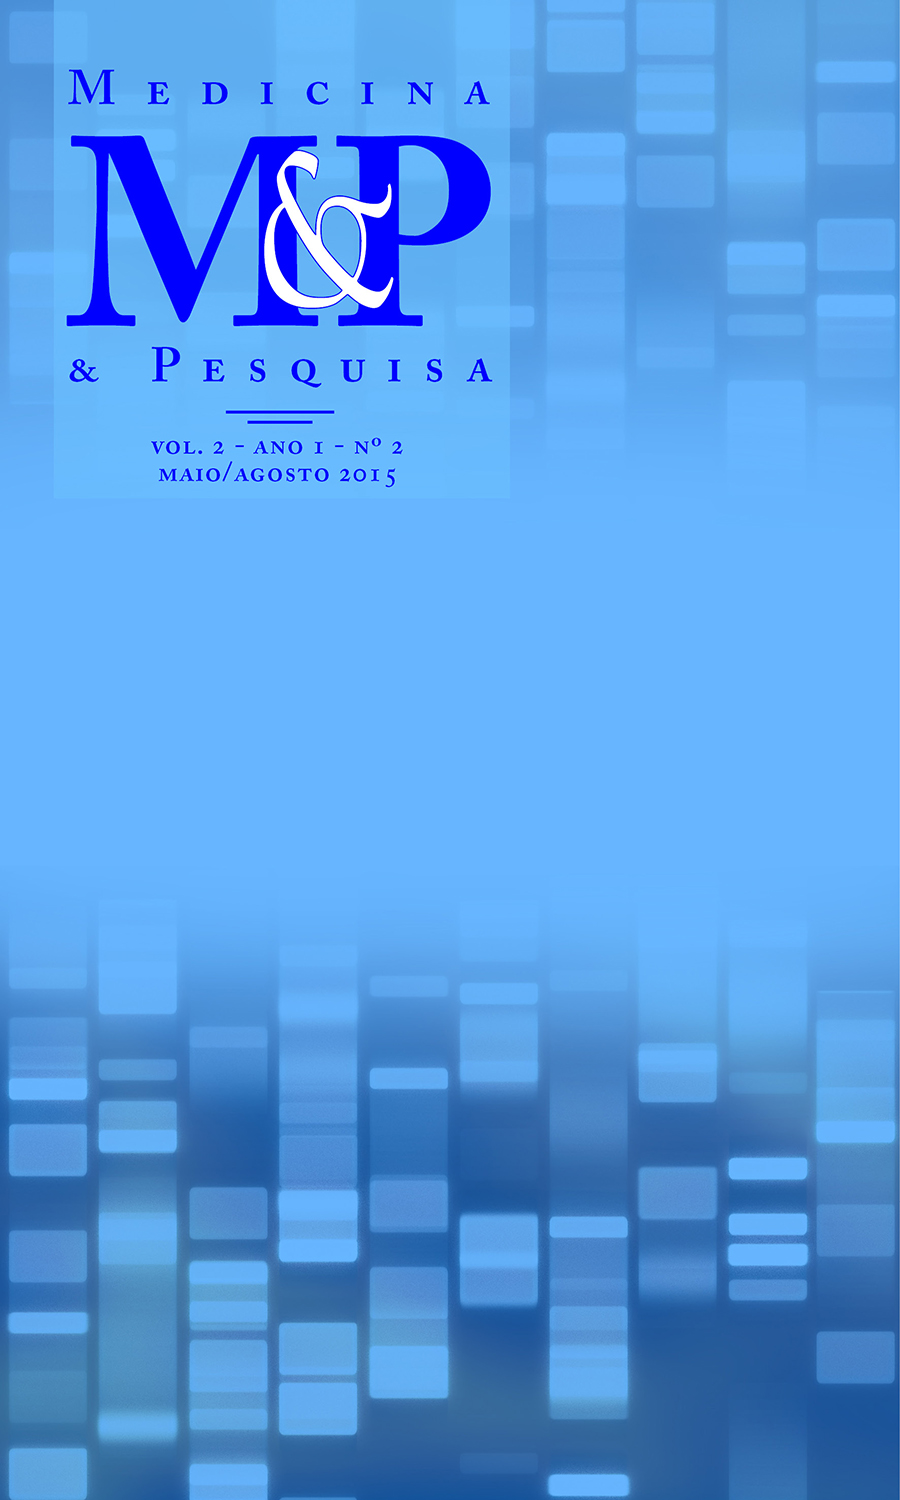 					Visualizar v. 1 n. 2 (2015): Medicina & Pesquisa - MAIO/AGOSTO
				